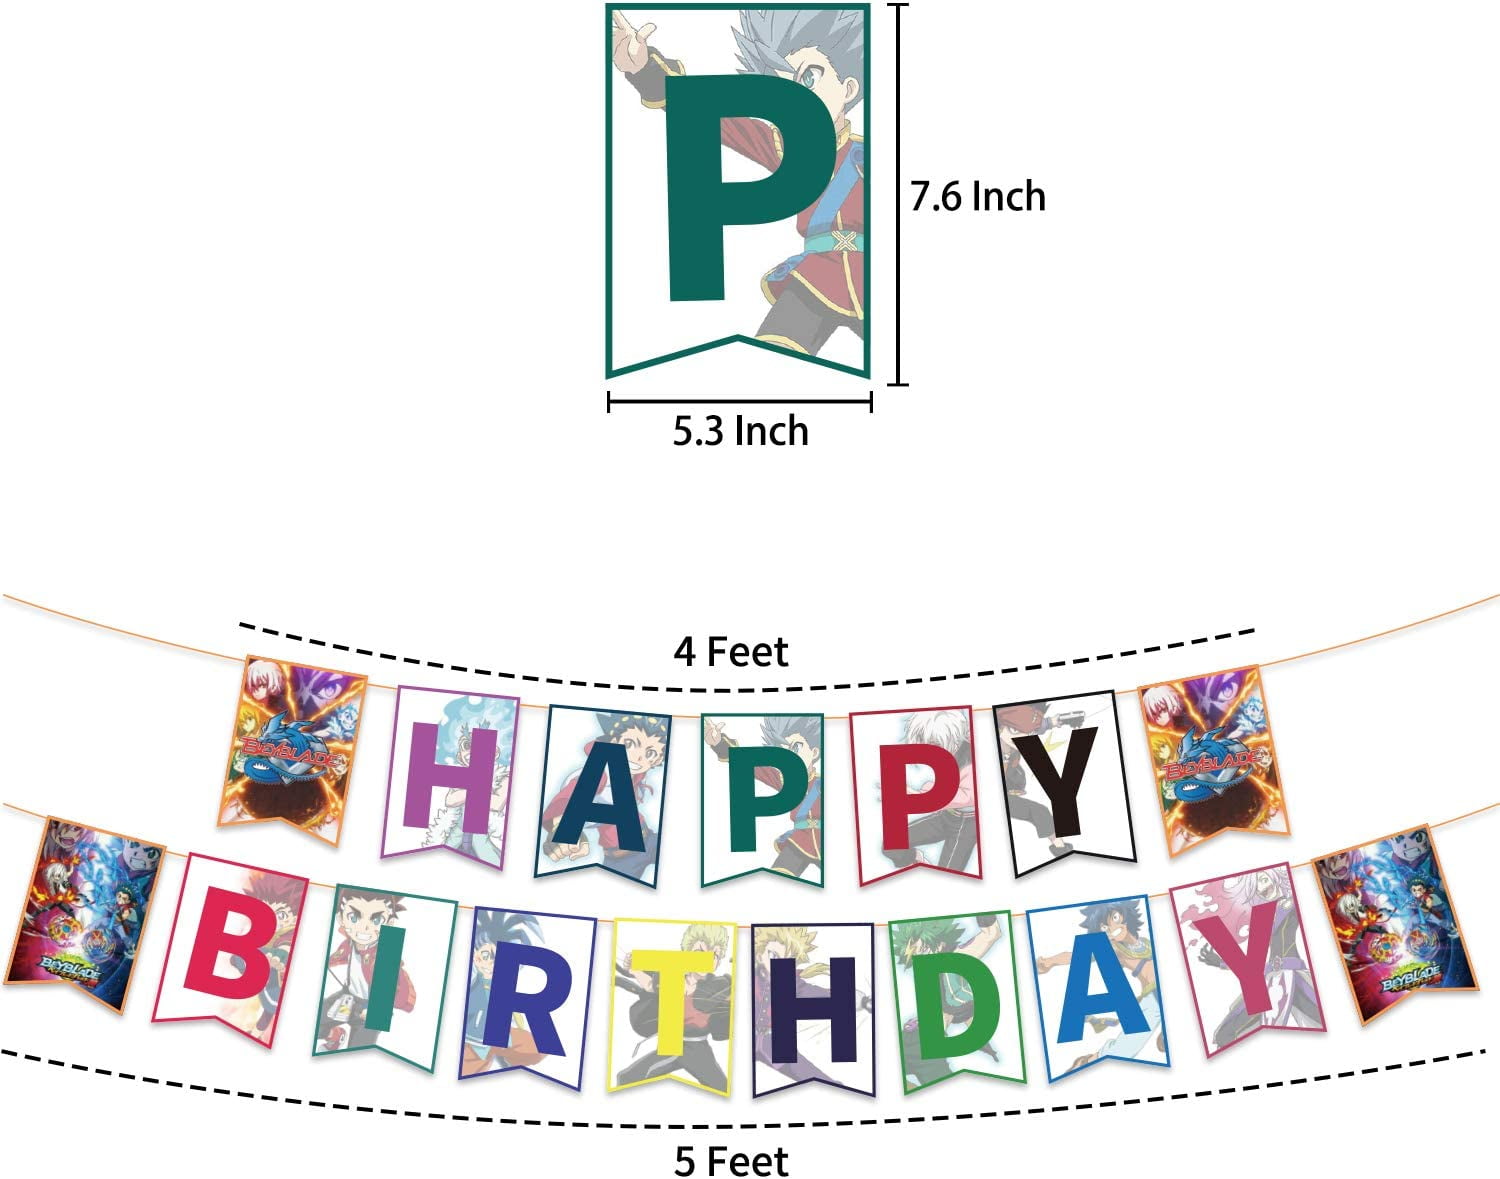 Kids Character Birthday Cake 8 Inch Round - The Cake Mixer | The Cake Mixer